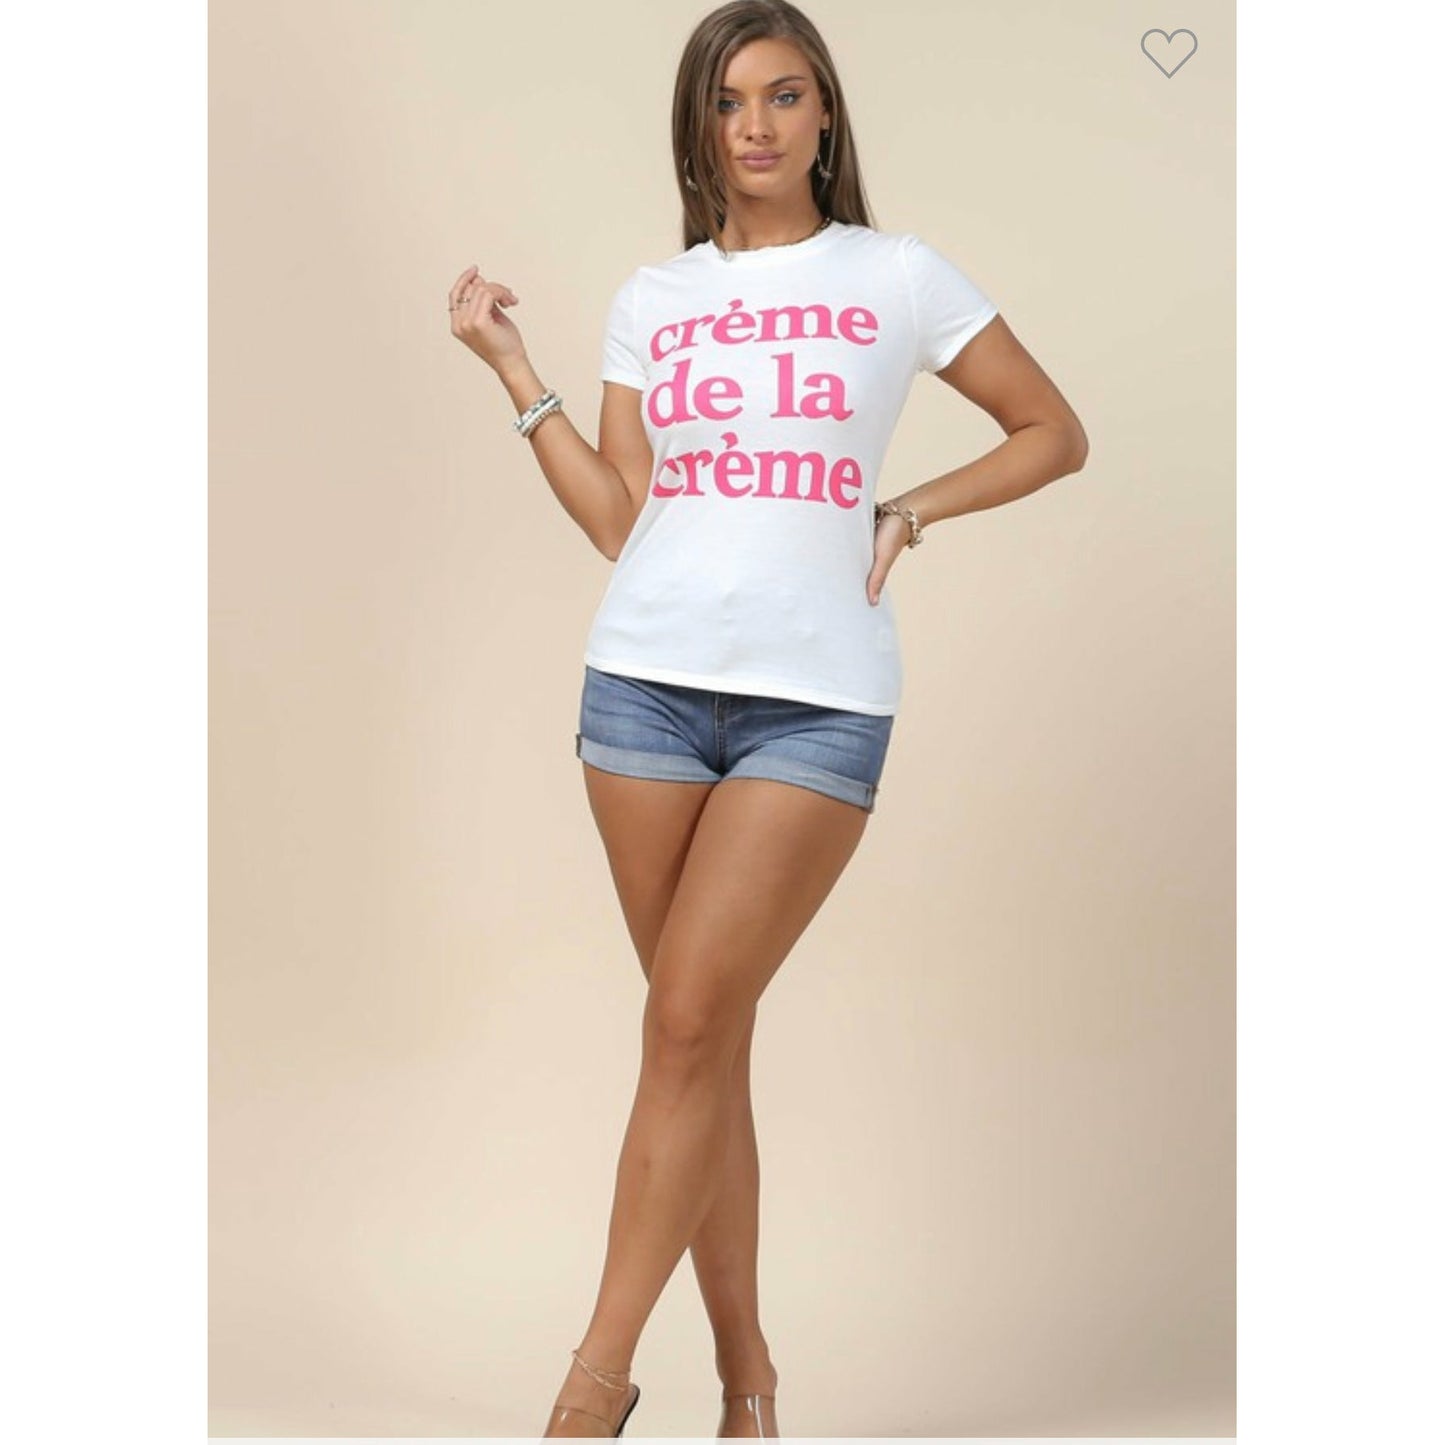 Crème de la crème graphic T shirt